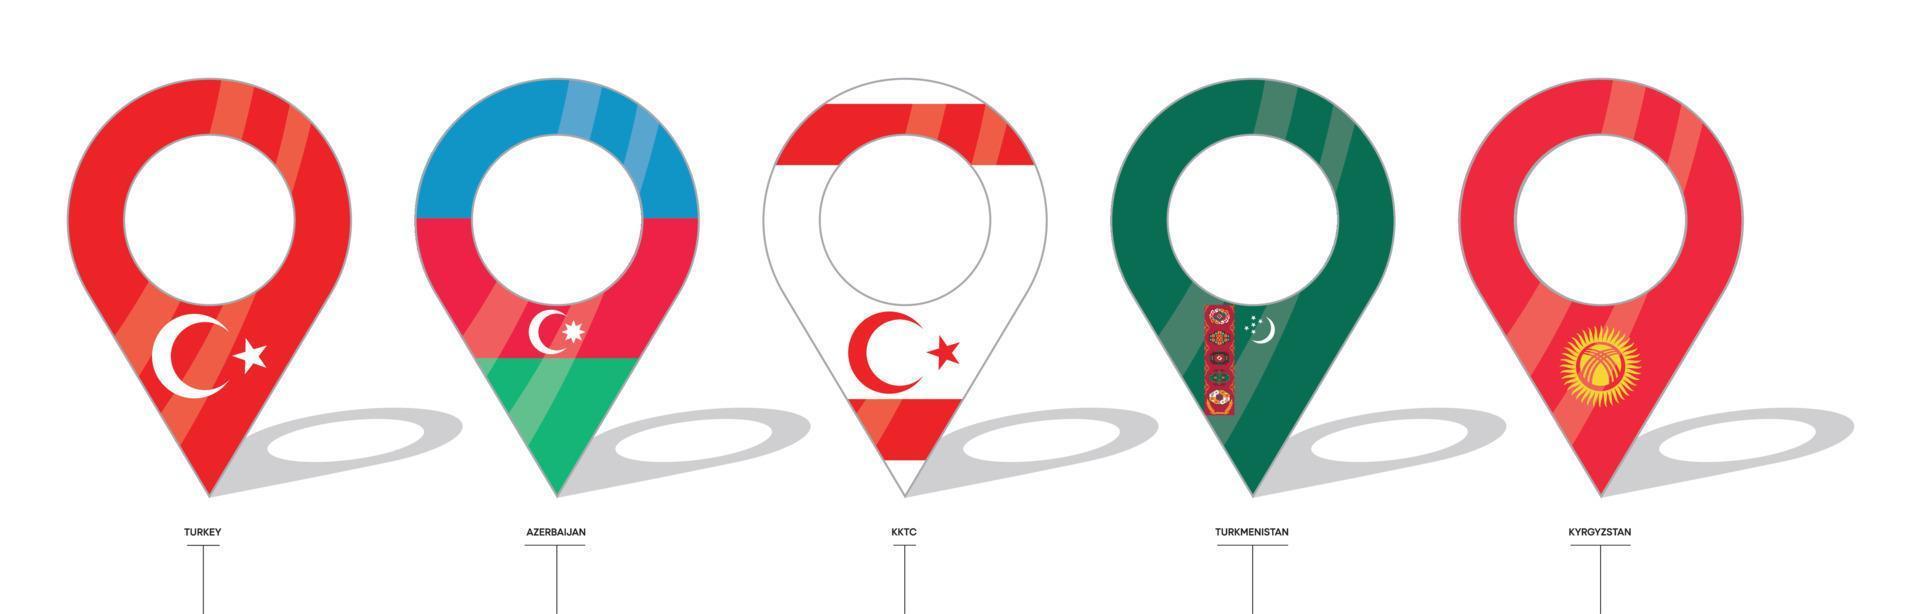 panneau de localisation du drapeau du pays. icônes de drapeau de la turquie, de l'azerbaïdjan, de la trnc, du turkménistan et du kirghizistan. drapeaux des pays avec enregistrement. icône vectorielle de formes simples de point de localisation. vecteur